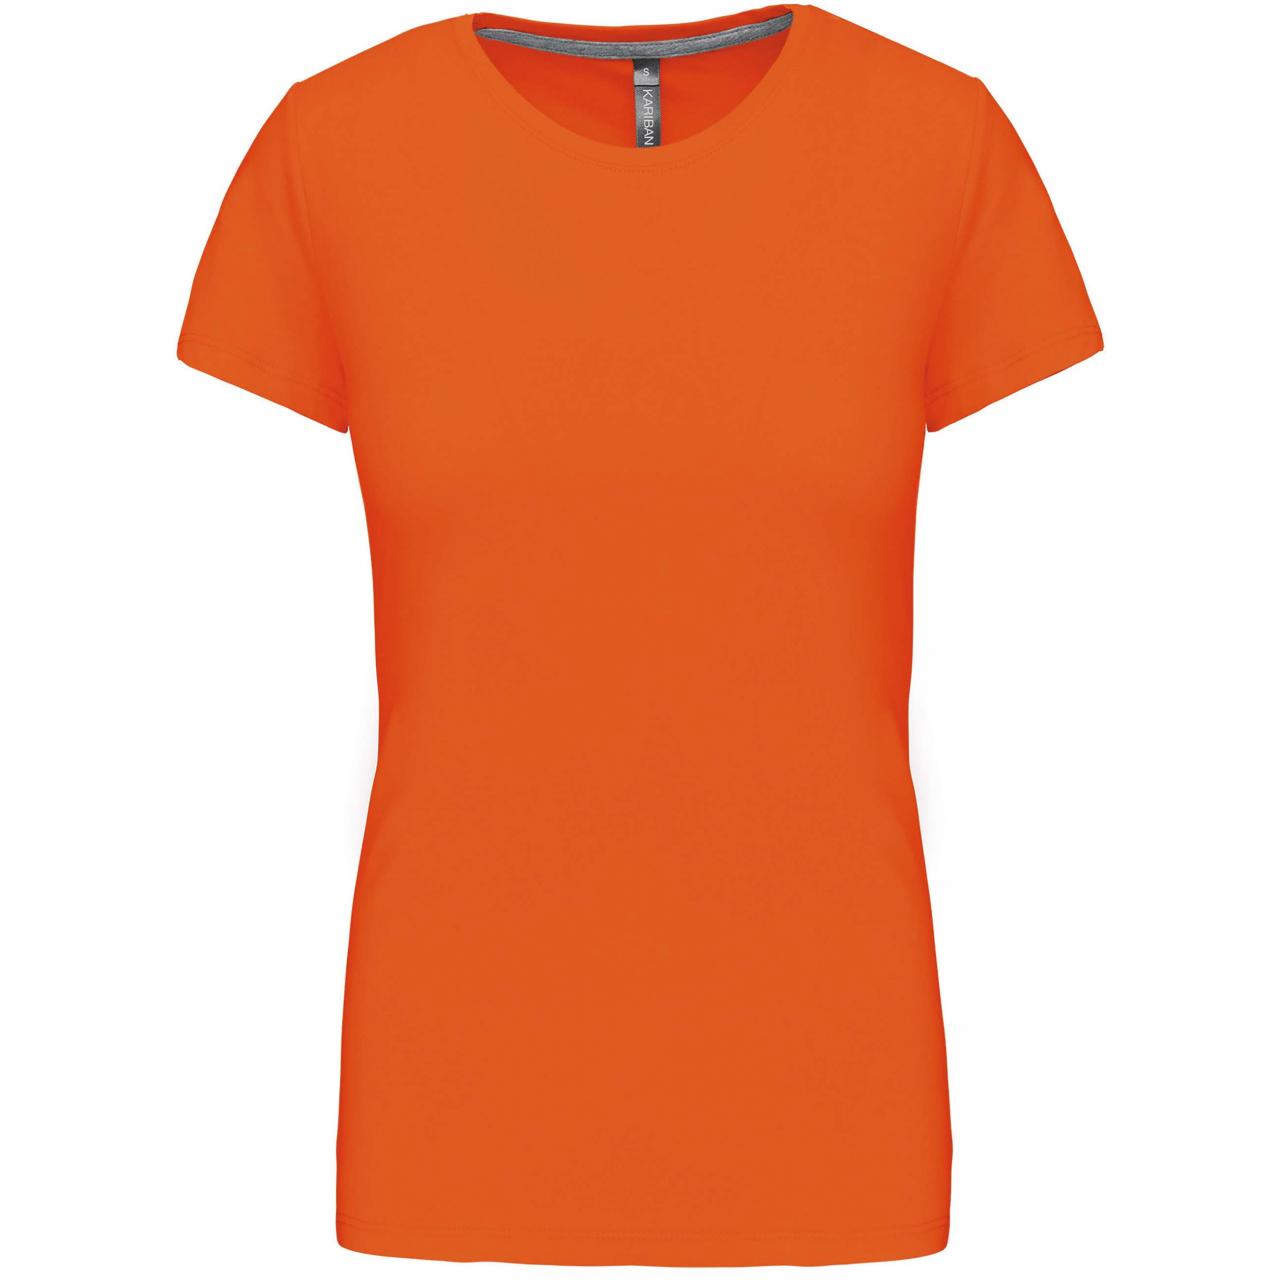 Dámské tričko Kariban s krátkým rukávem - oranžové, M